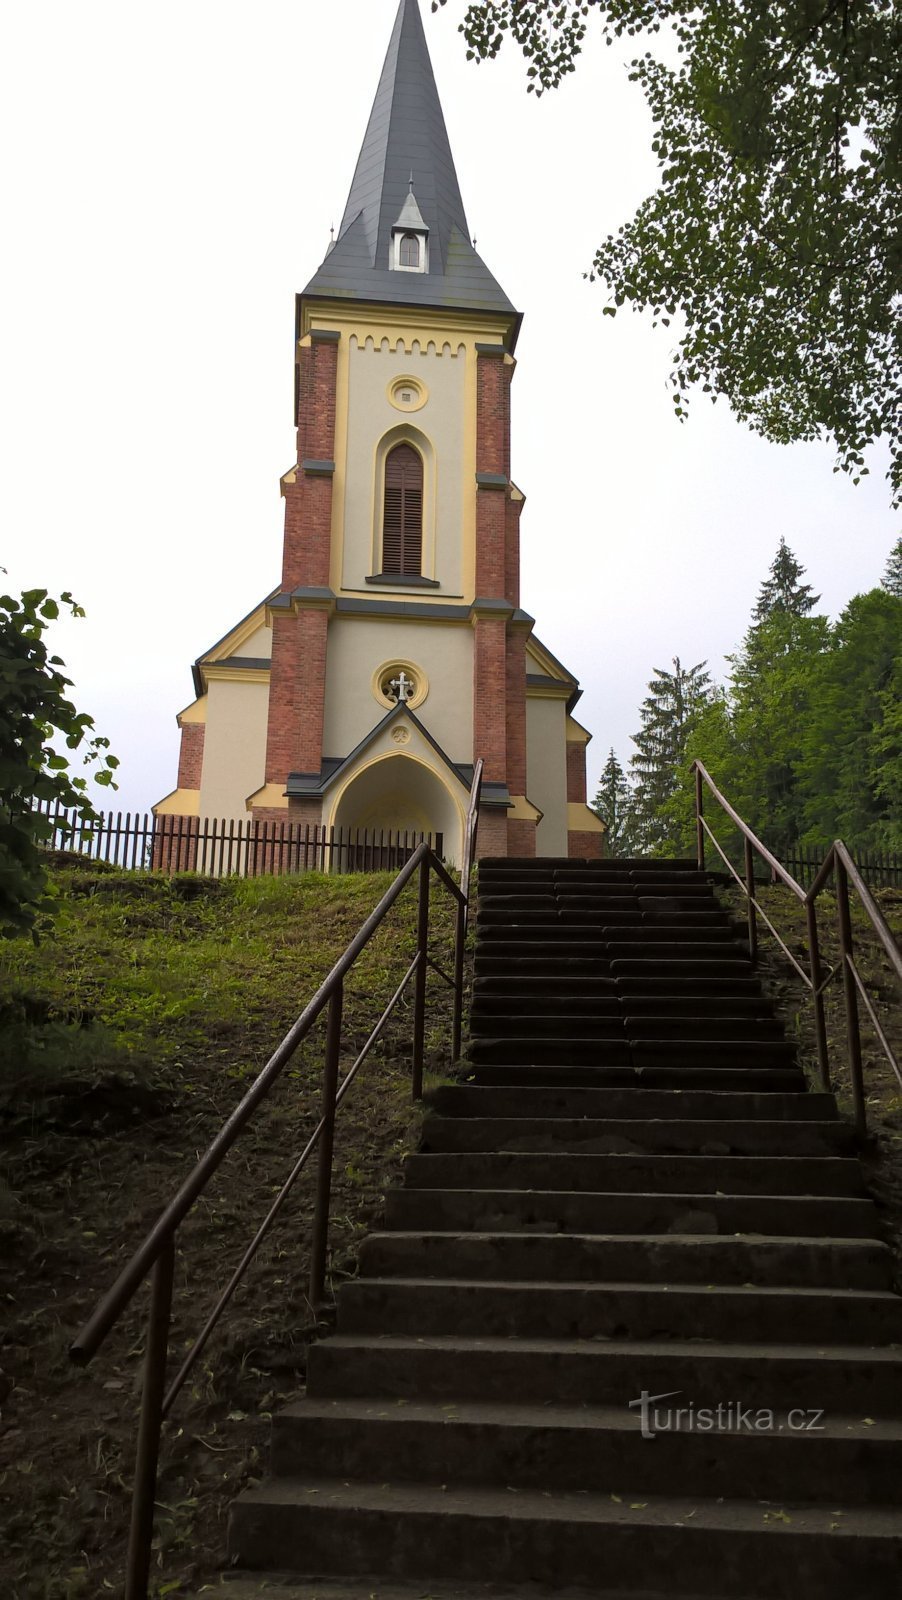 Stations of the Cross in Horní Lomná